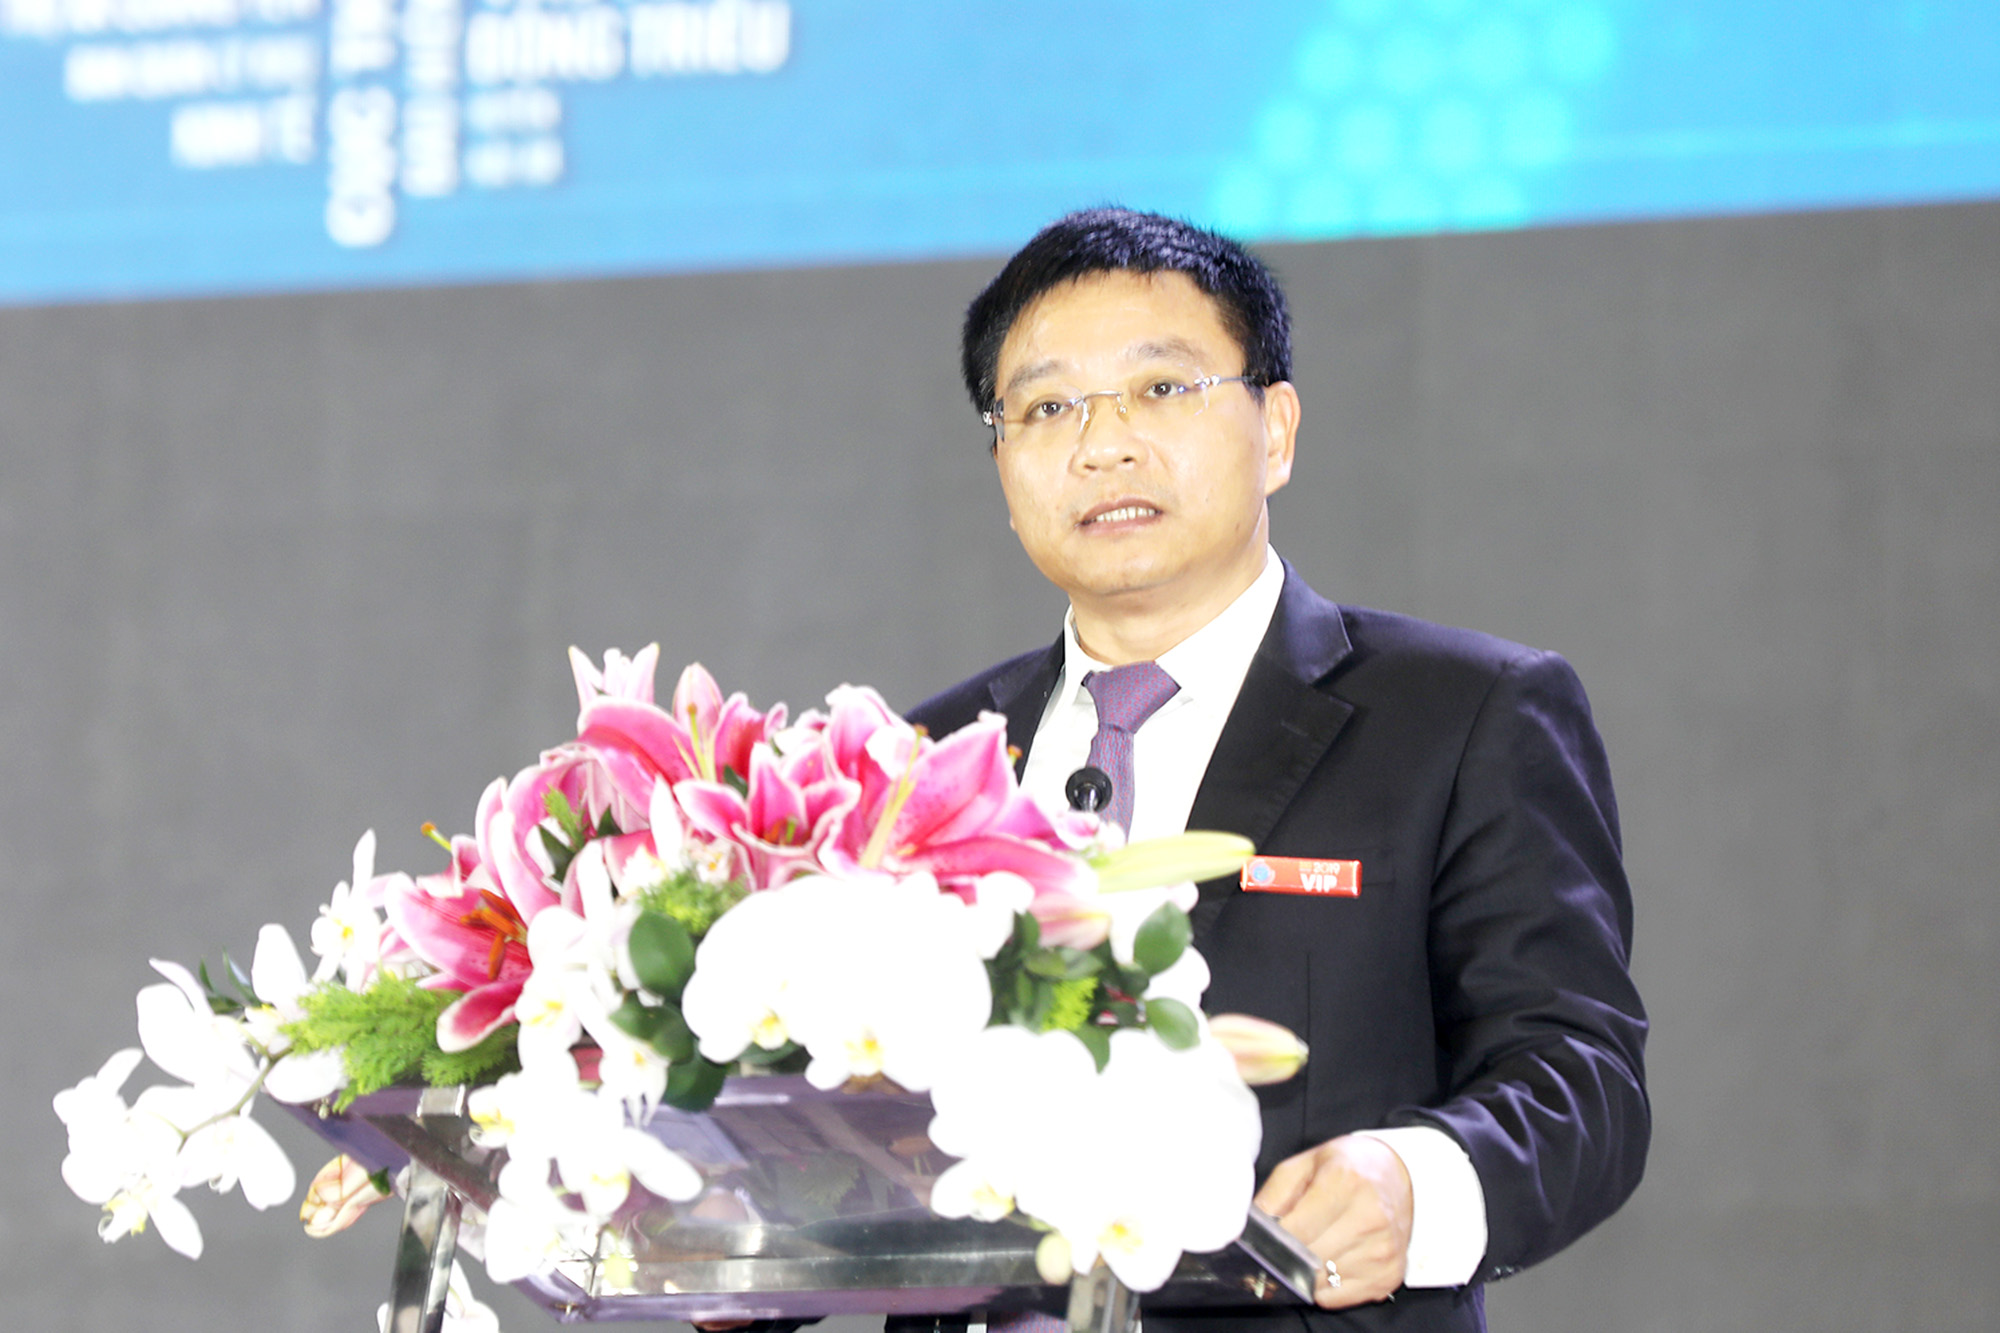 Đồng chí Nguyễn Văn Thắng, Phó Bí thư Tỉnh ủy, Chủ tịch UBND tỉnh, phát biểu bế mạc lễ công bố.